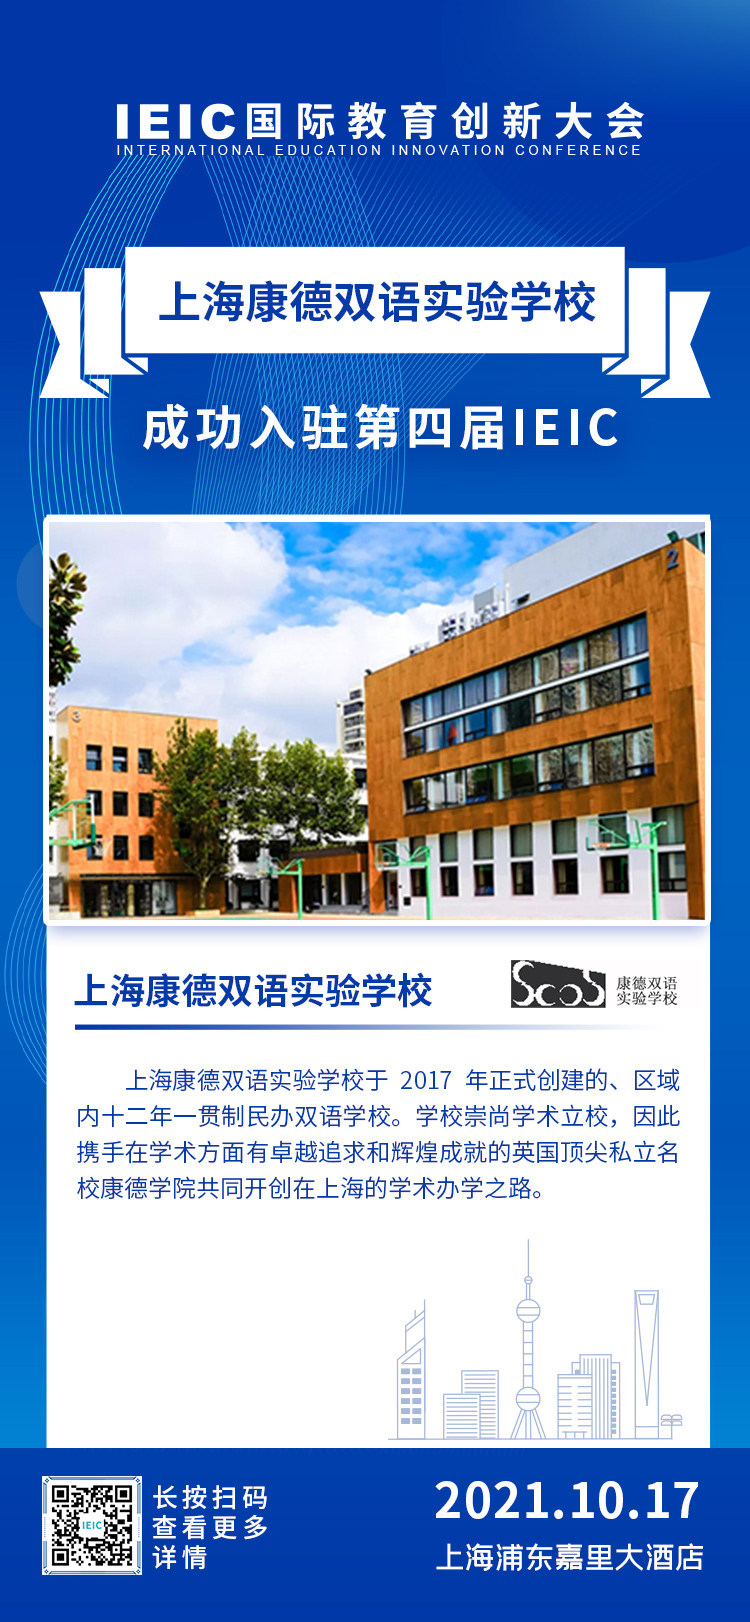 上海康德双语实验学校|入驻参展2021年远播第四届IEIC国际教育创新大会